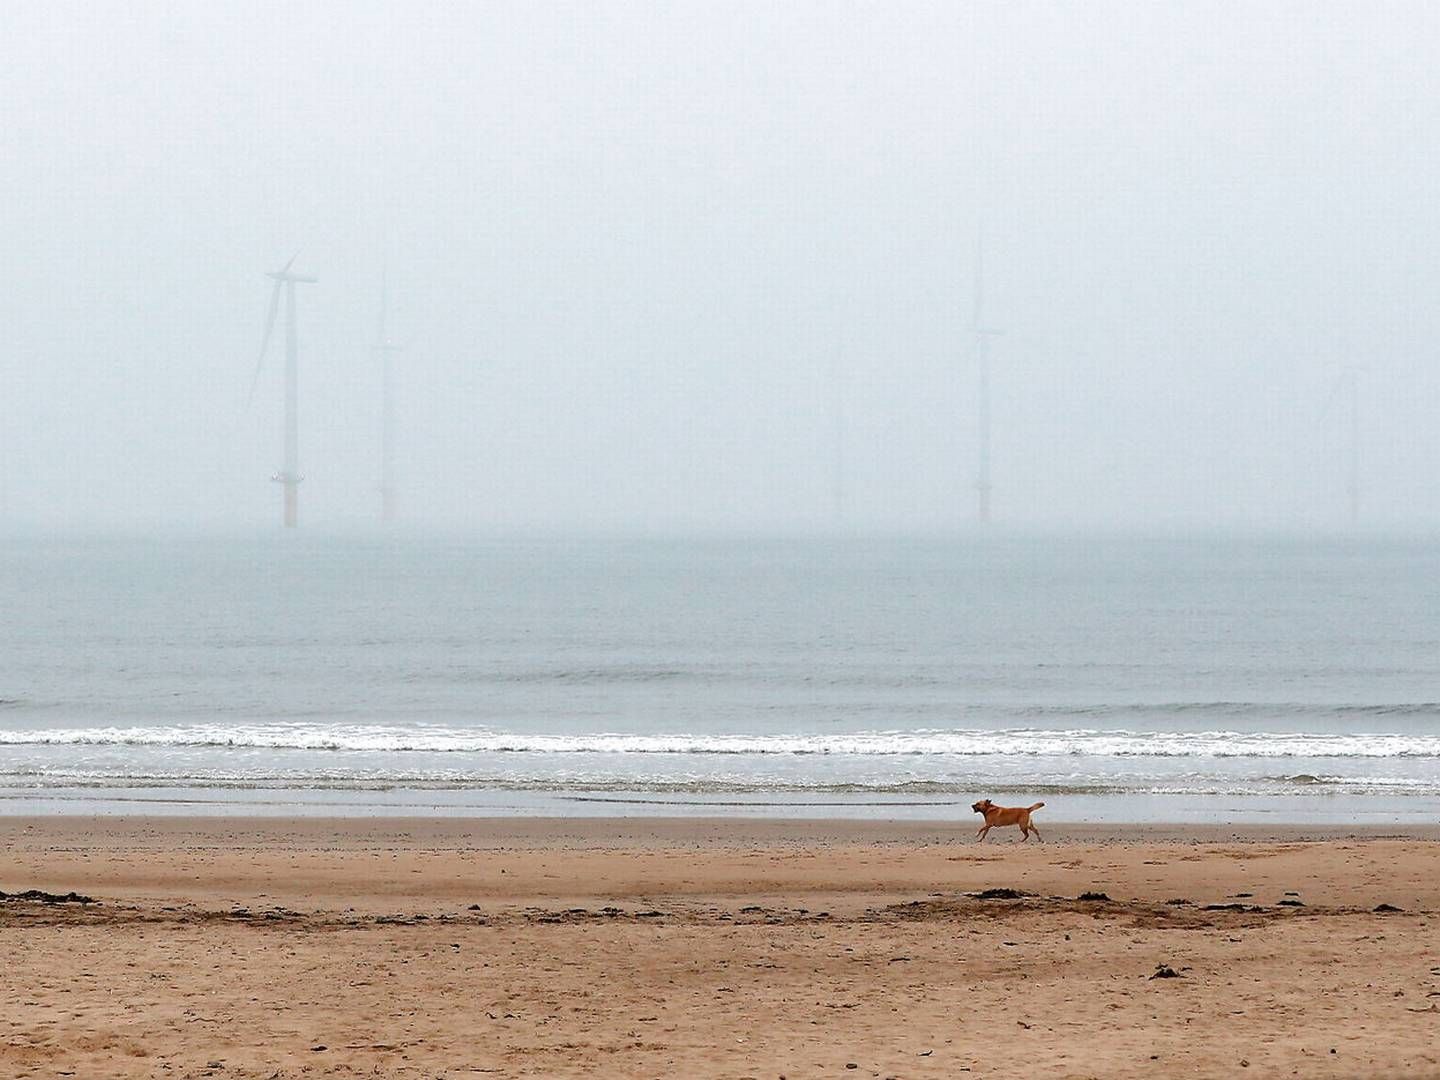 Langt om længe er tågen ved at lette for Vineyard Wind. Billedet her er dog den britiske havmøllepark Teesside. | Foto: Lee Smith/Reuters/Ritzau Scanpix